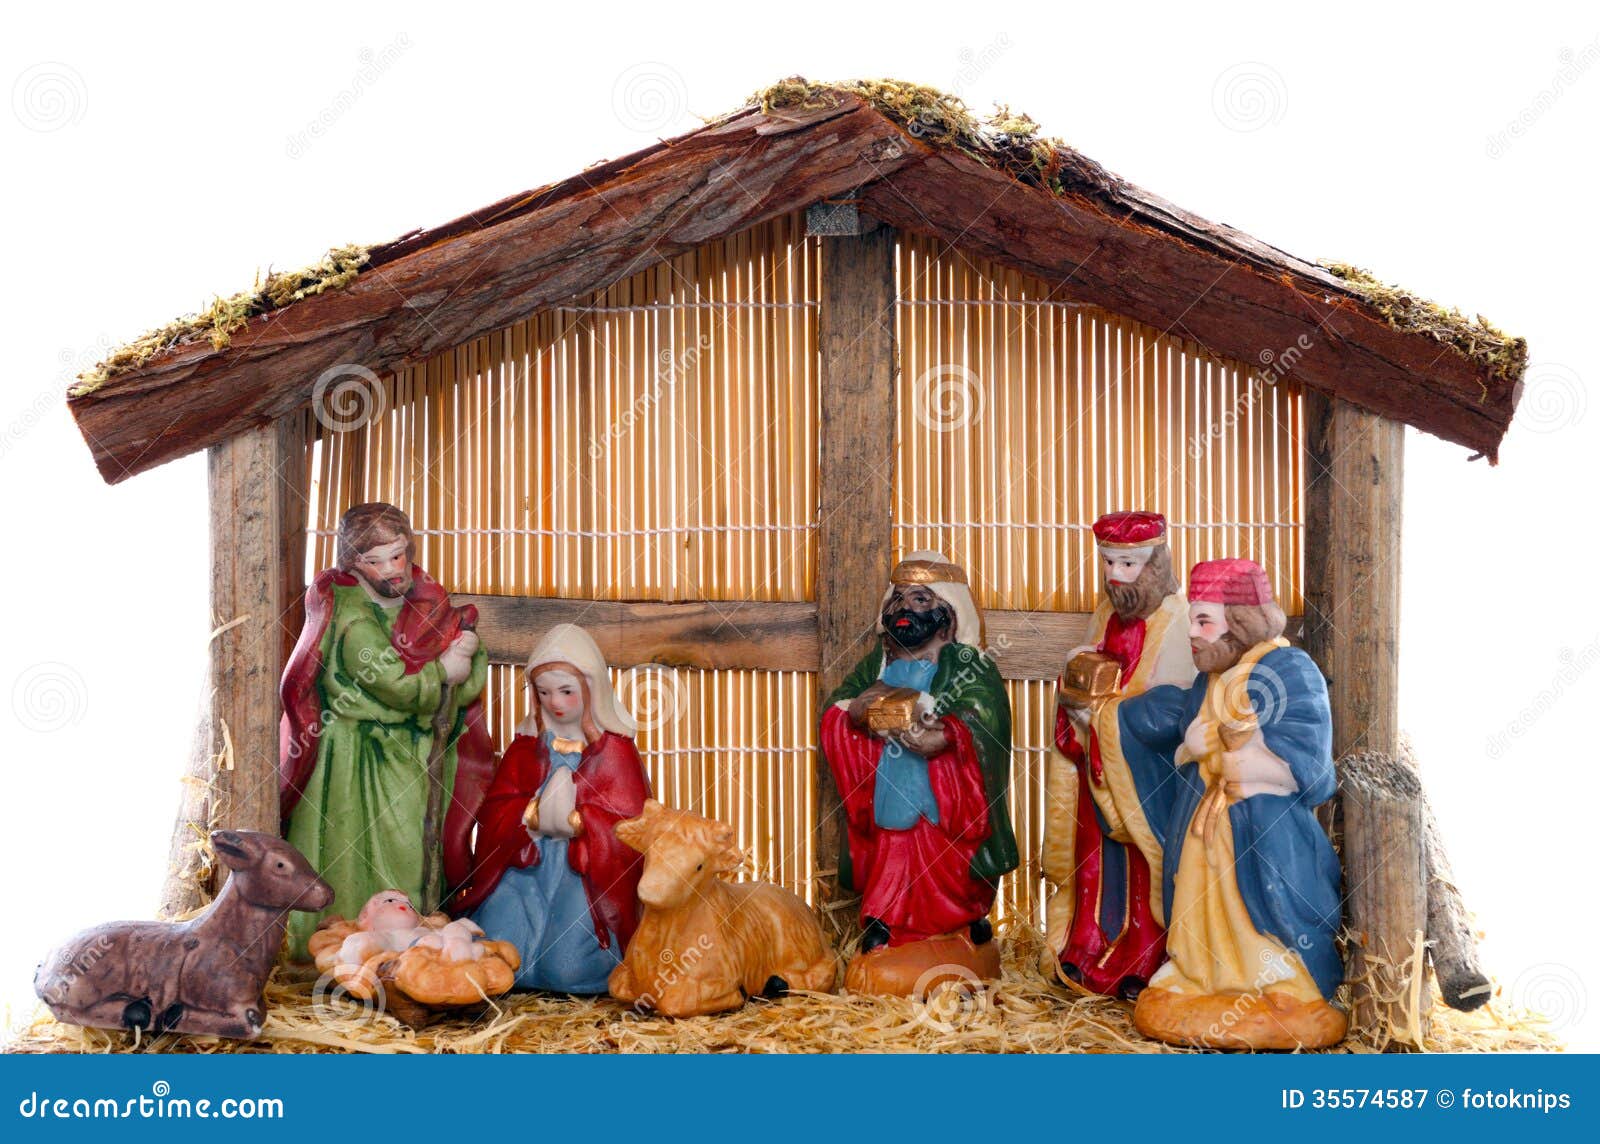 Nativity scene royalty free stock photography